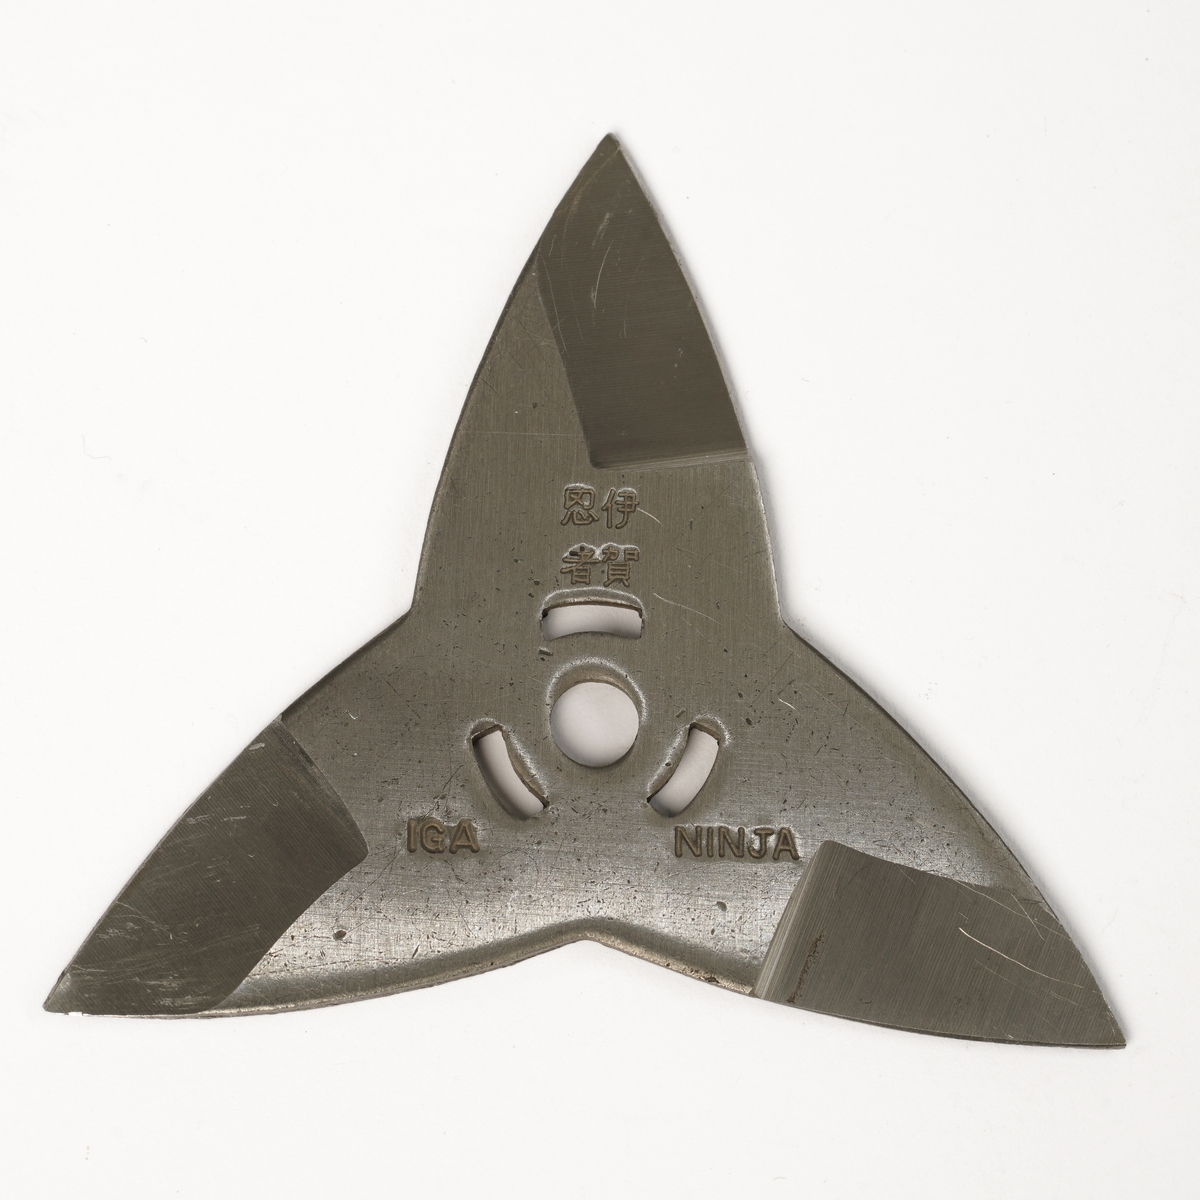 Tre knivblad smidd sammen til en stjerne (shuriken), laget for å kunne kaste med.